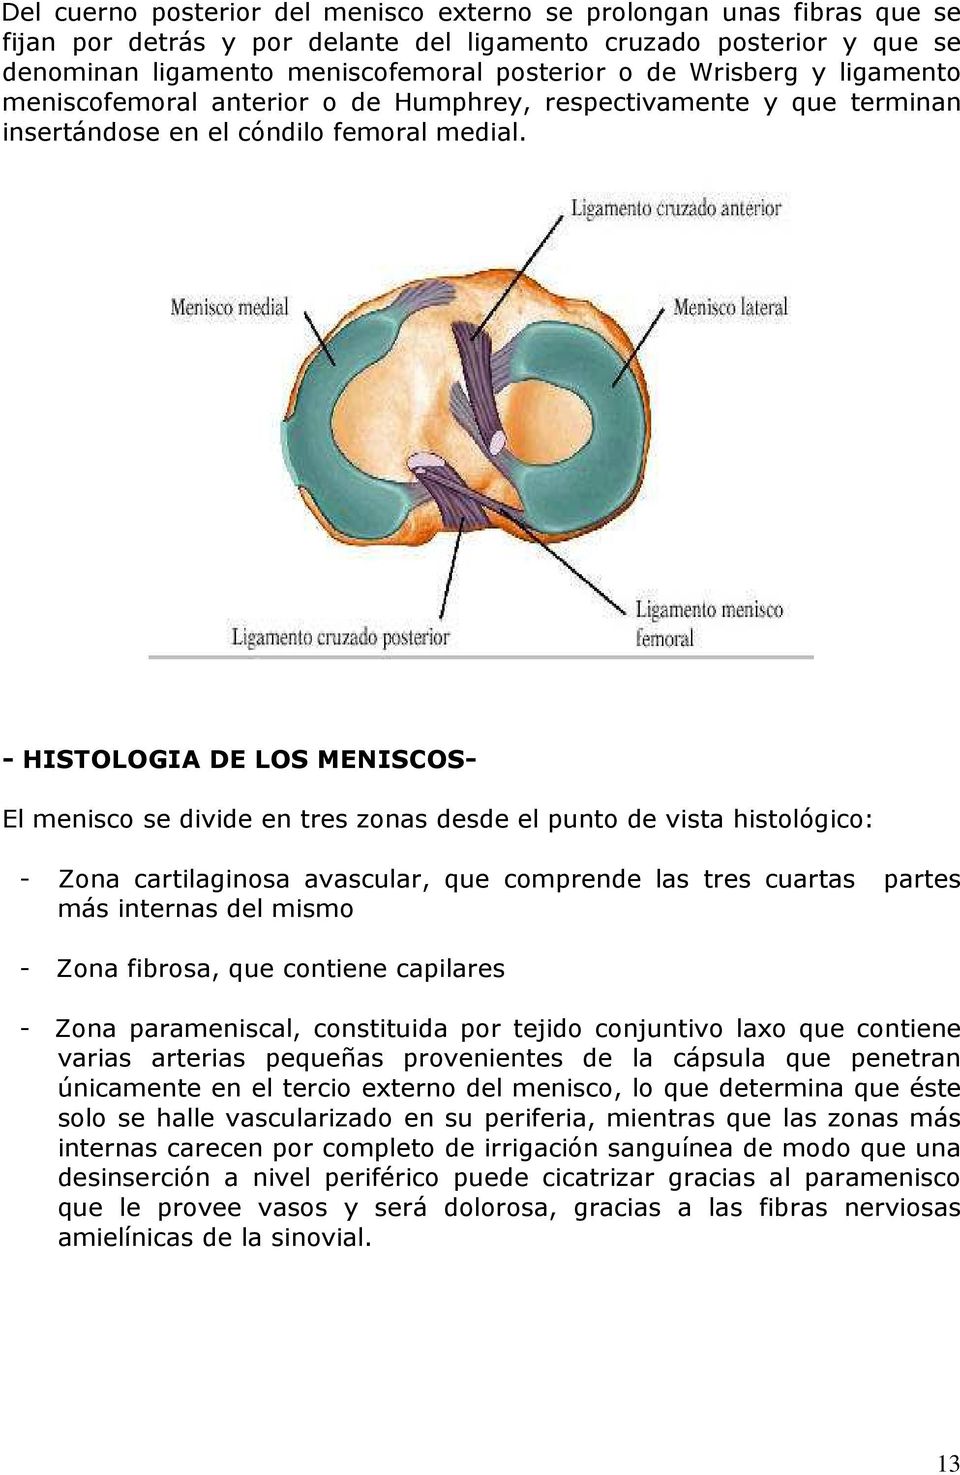 - HISTOLOGIA DE LOS MENISCOS- El menisco se divide en tres zonas desde el punto de vista histológico: - Zona cartilaginosa avascular, que comprende las tres cuartas partes más internas del mismo -